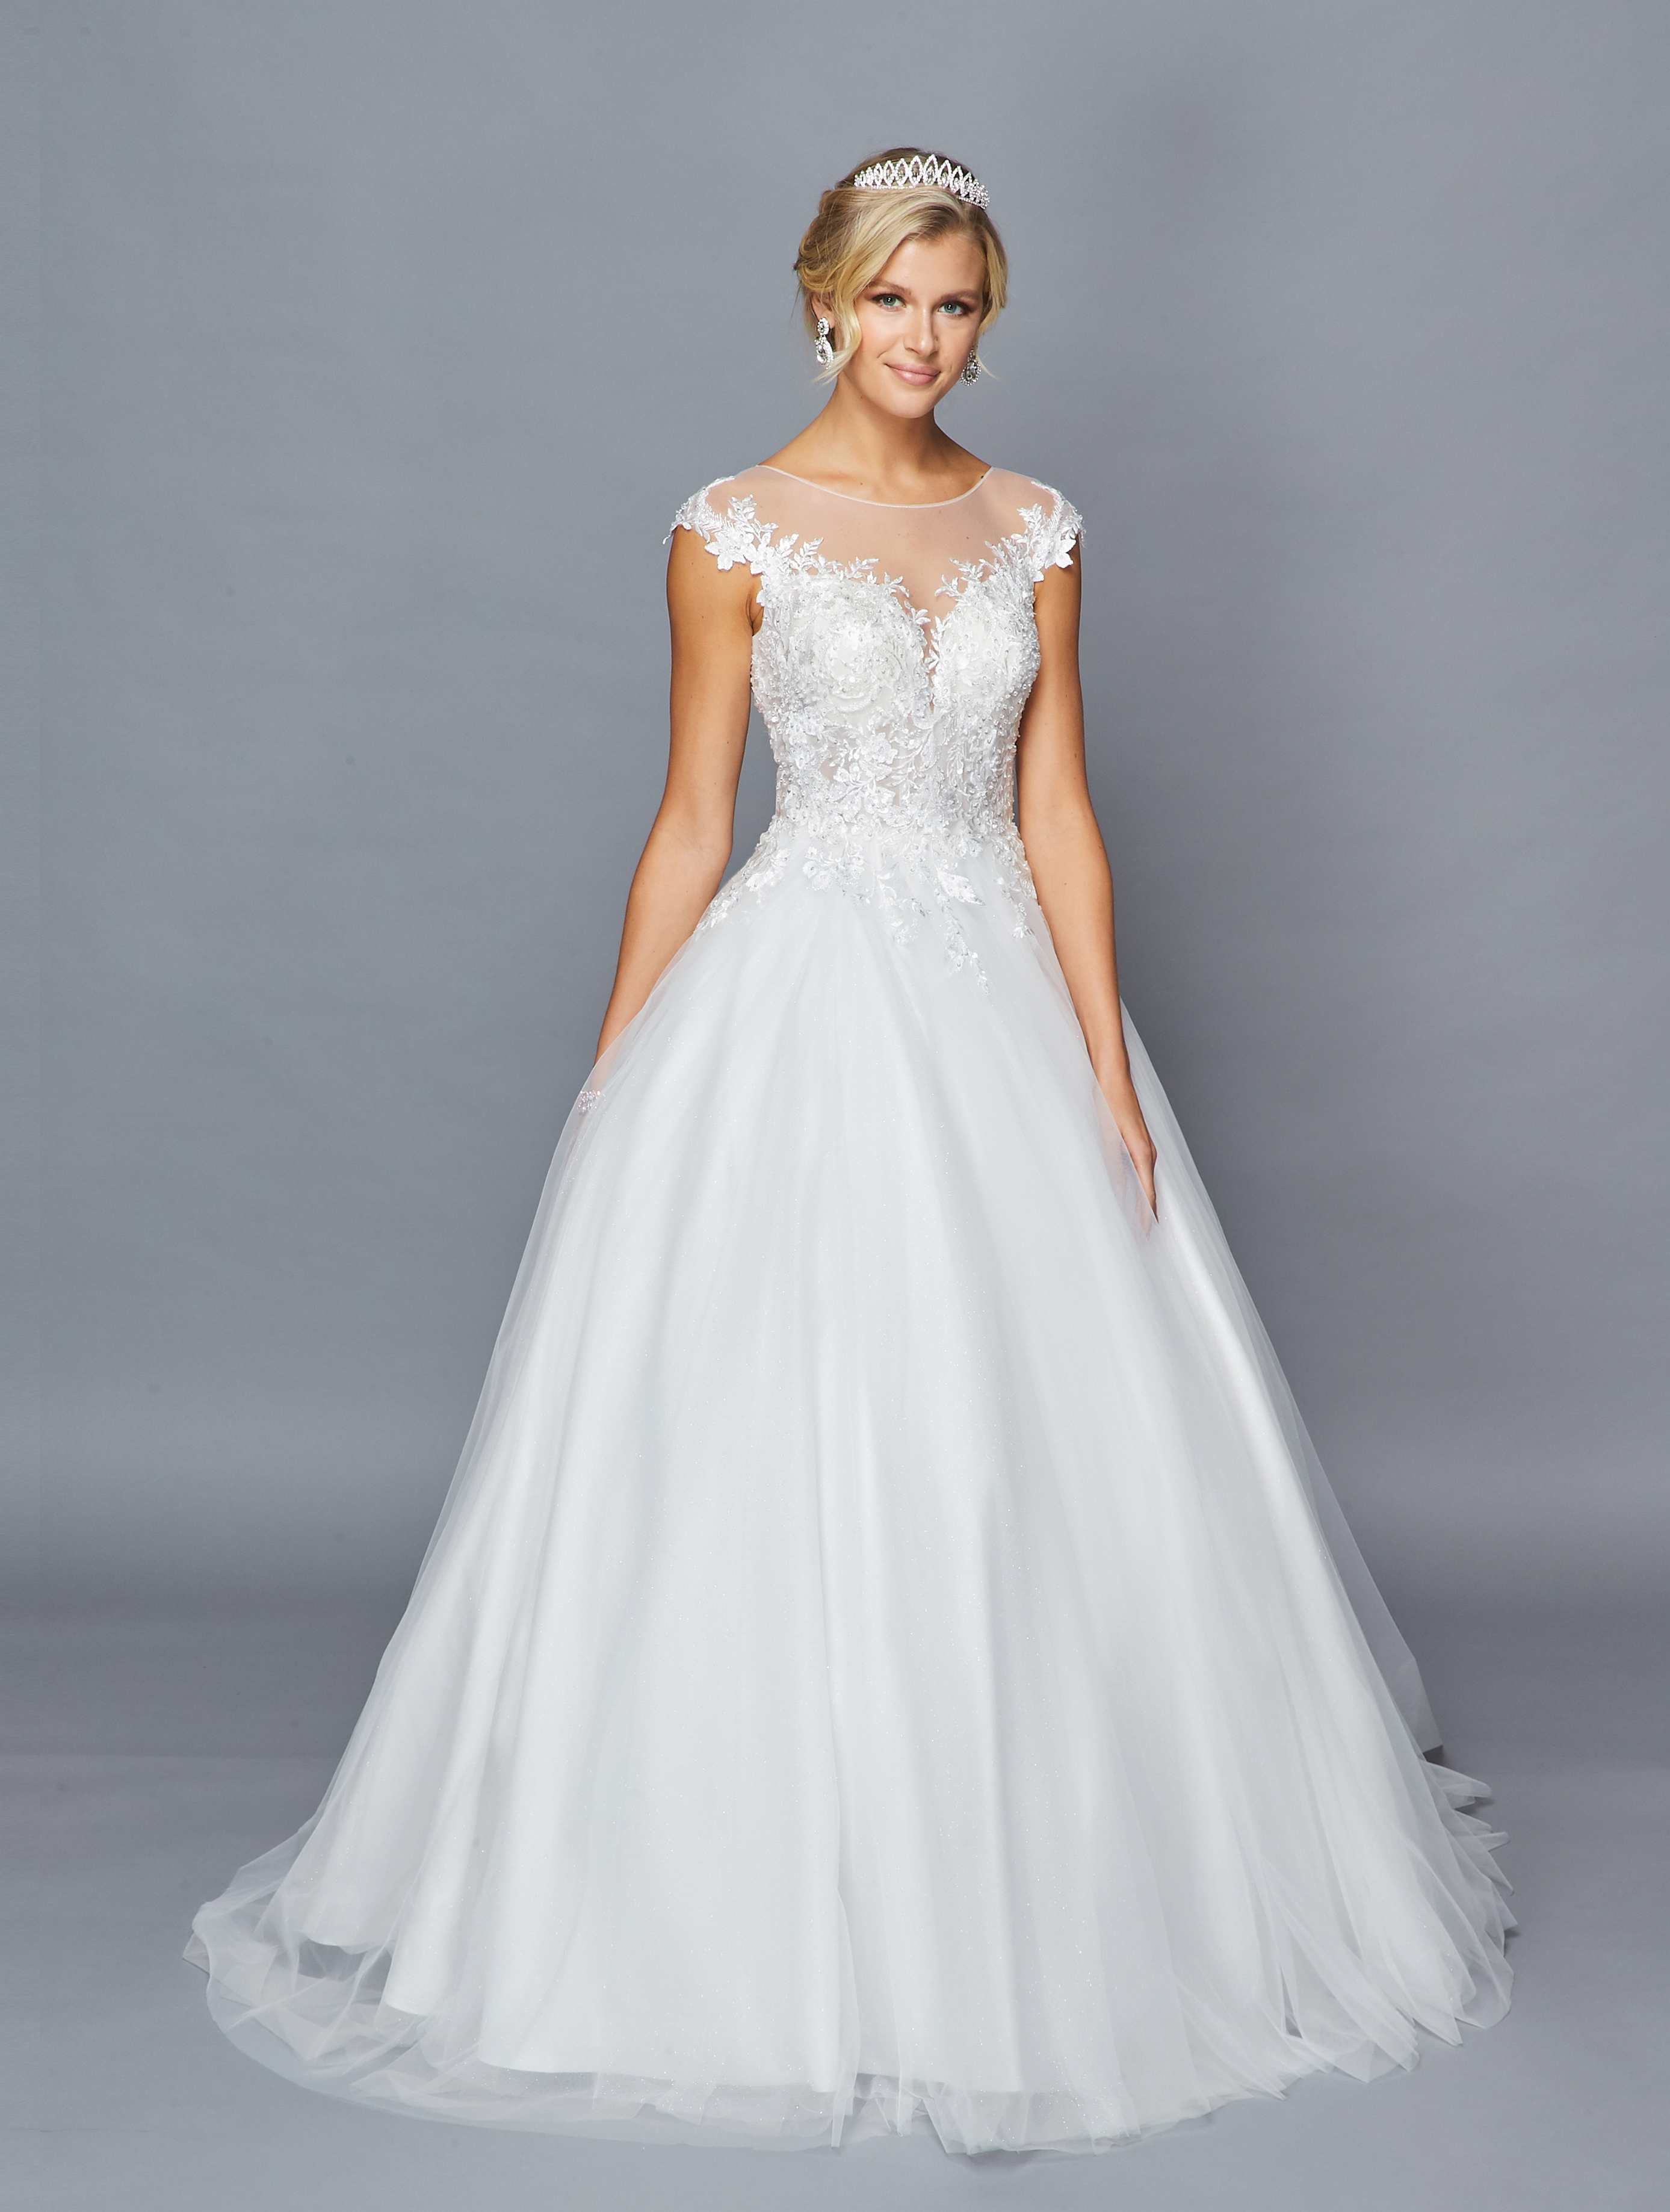 DeKlaire Bridal 425 Illusion Boat Neckline Cap Sleeve A-Line Court Train Wedding Dress Lace Sequins Applique.